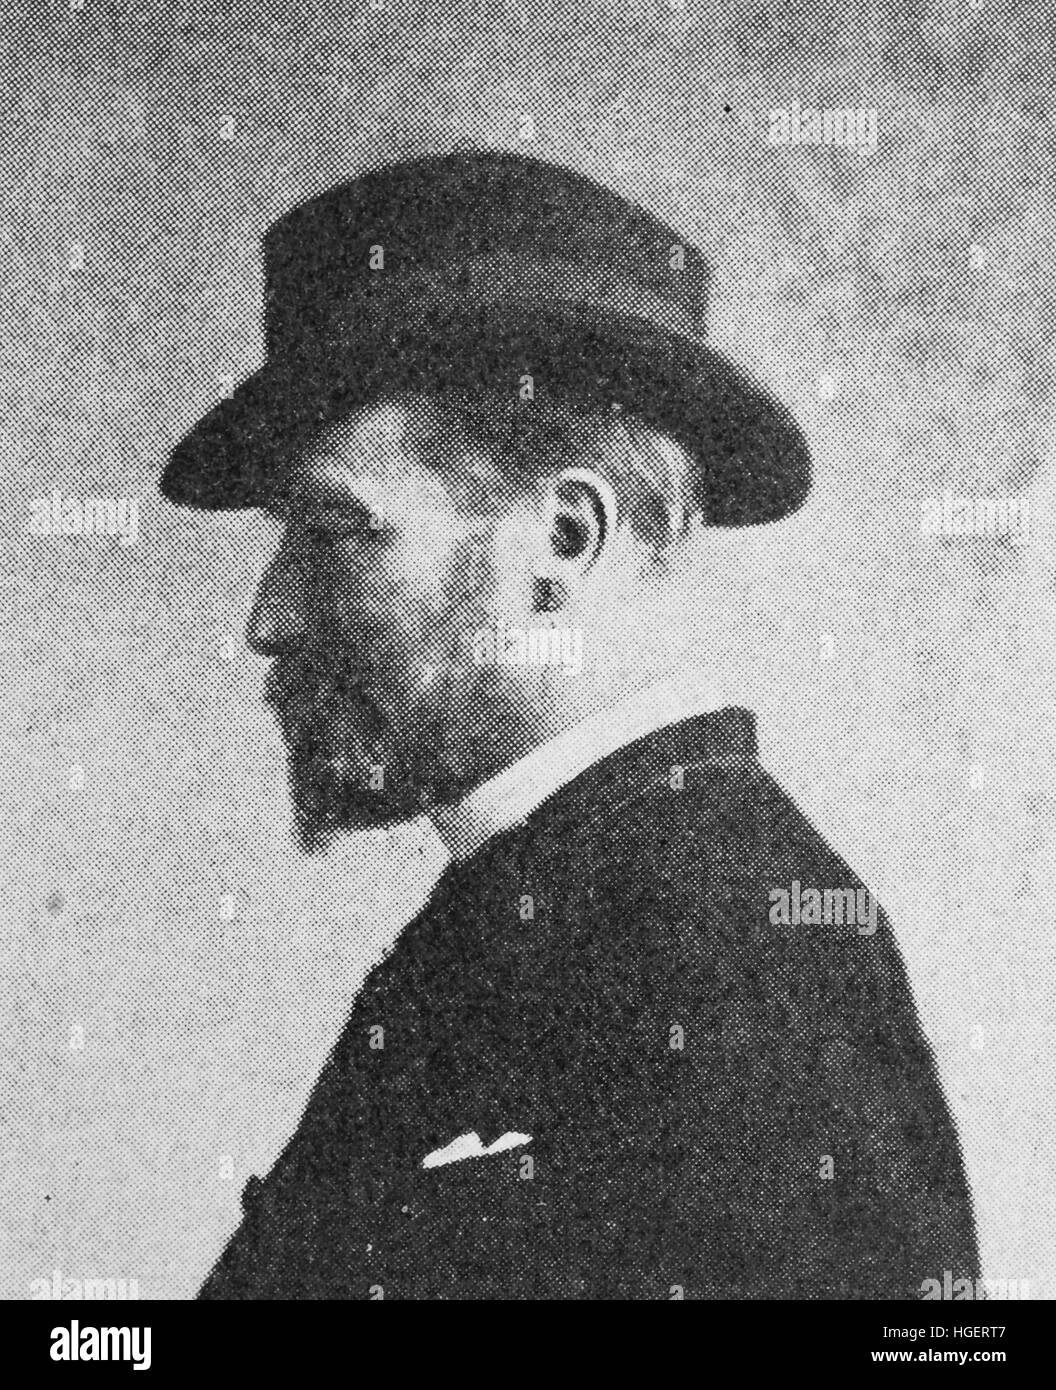 Wilhelm Hermann Adolf Lauter, geboren 1847, Ingenieur, Brücke Konstruktor, Reproduktion eines Fotos aus dem Jahr 1895, Digital verbessert Stockfoto